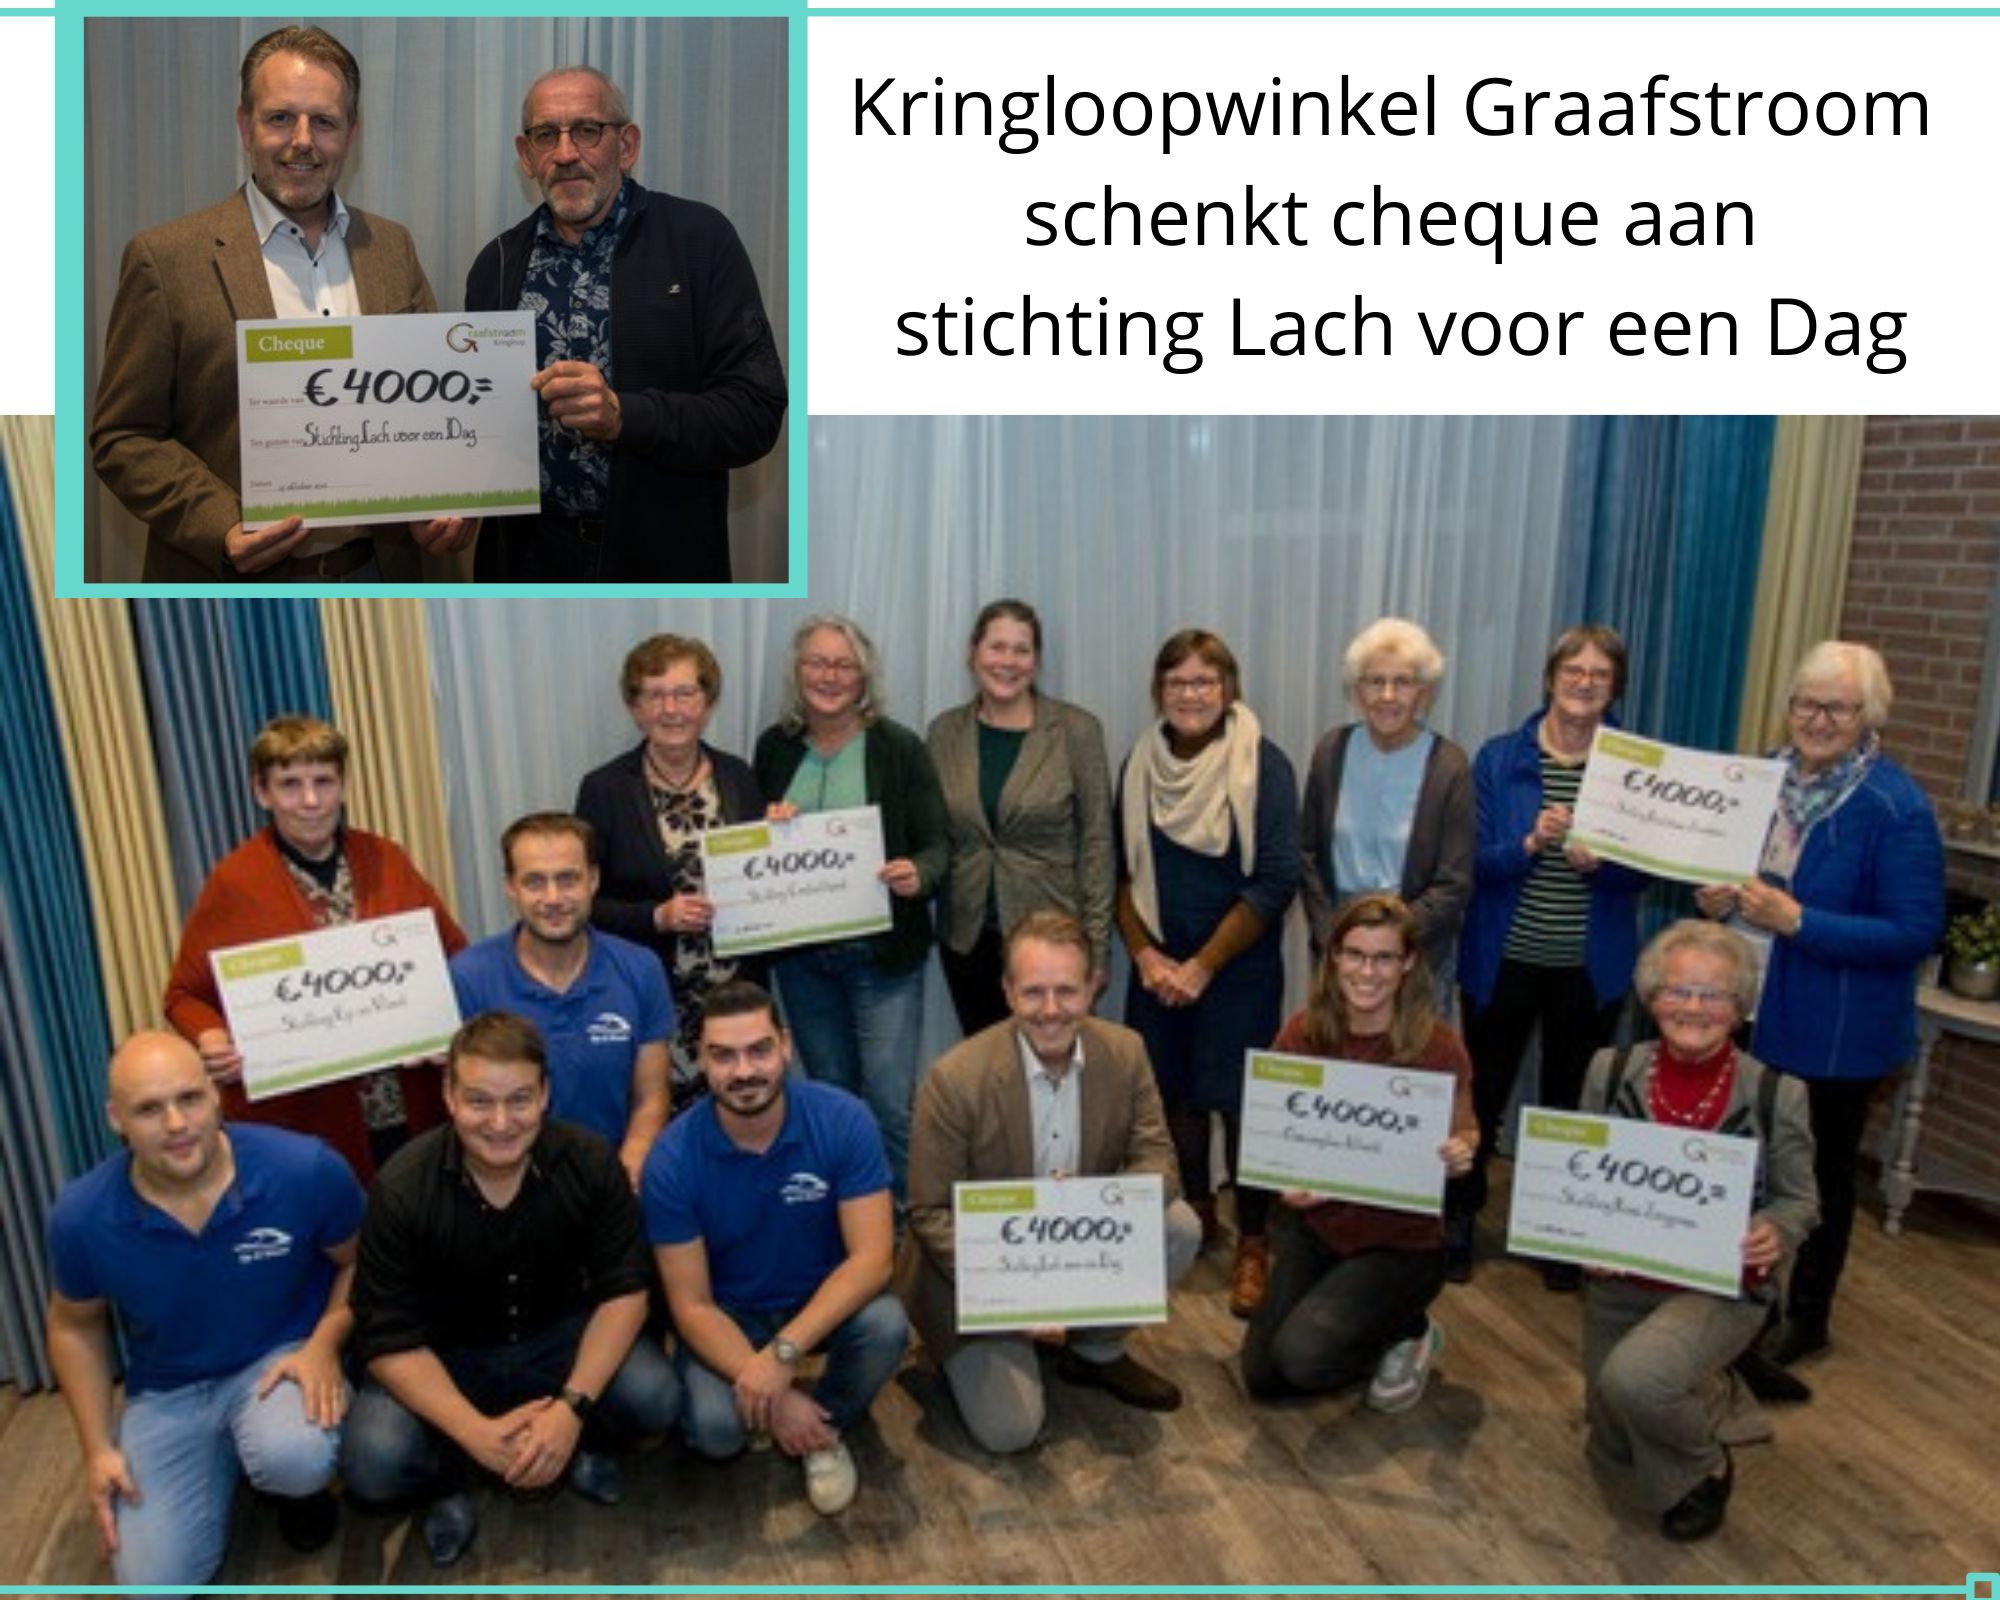 Kringloopwinkel Graafstrooms schenkt cheque